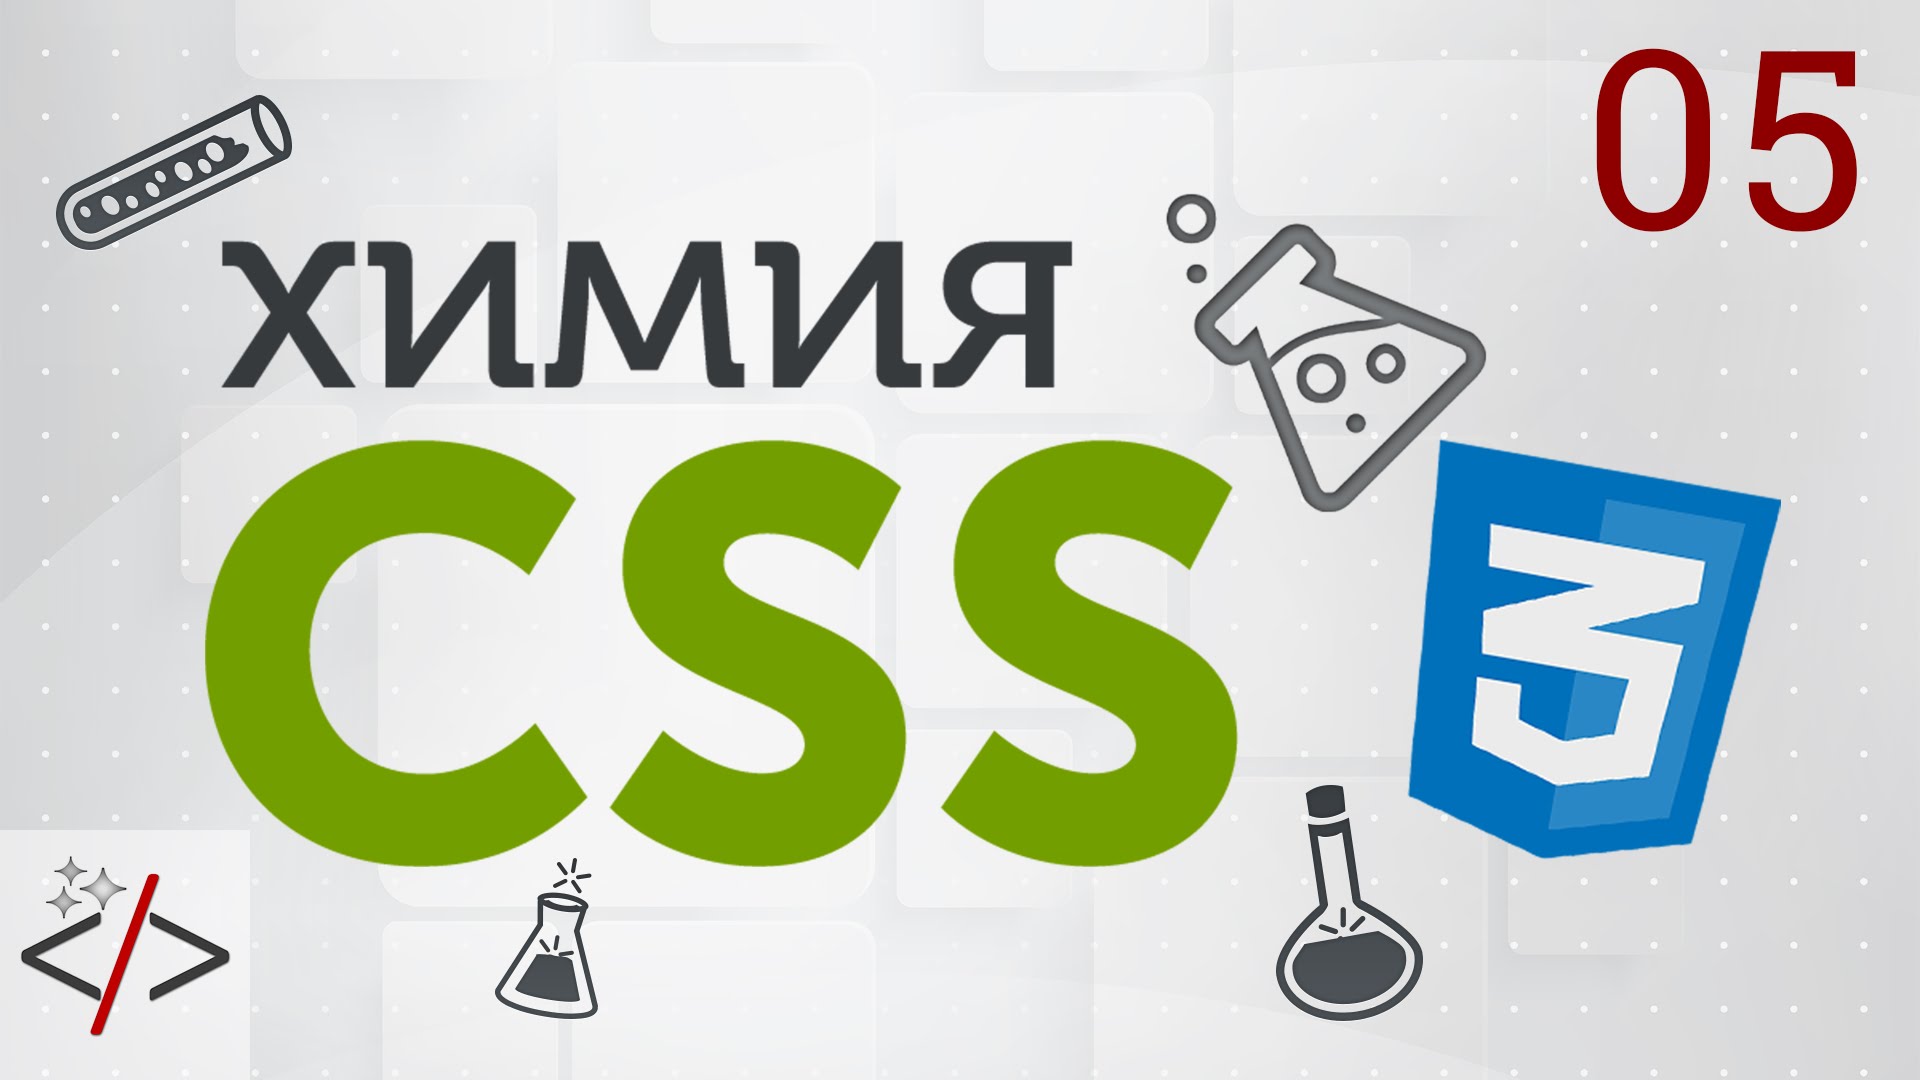 5. [Уроки по CSS3] Селекторы в CSS. Часть 3 - Комбинированные селекторы  - «Видео уроки - CSS»